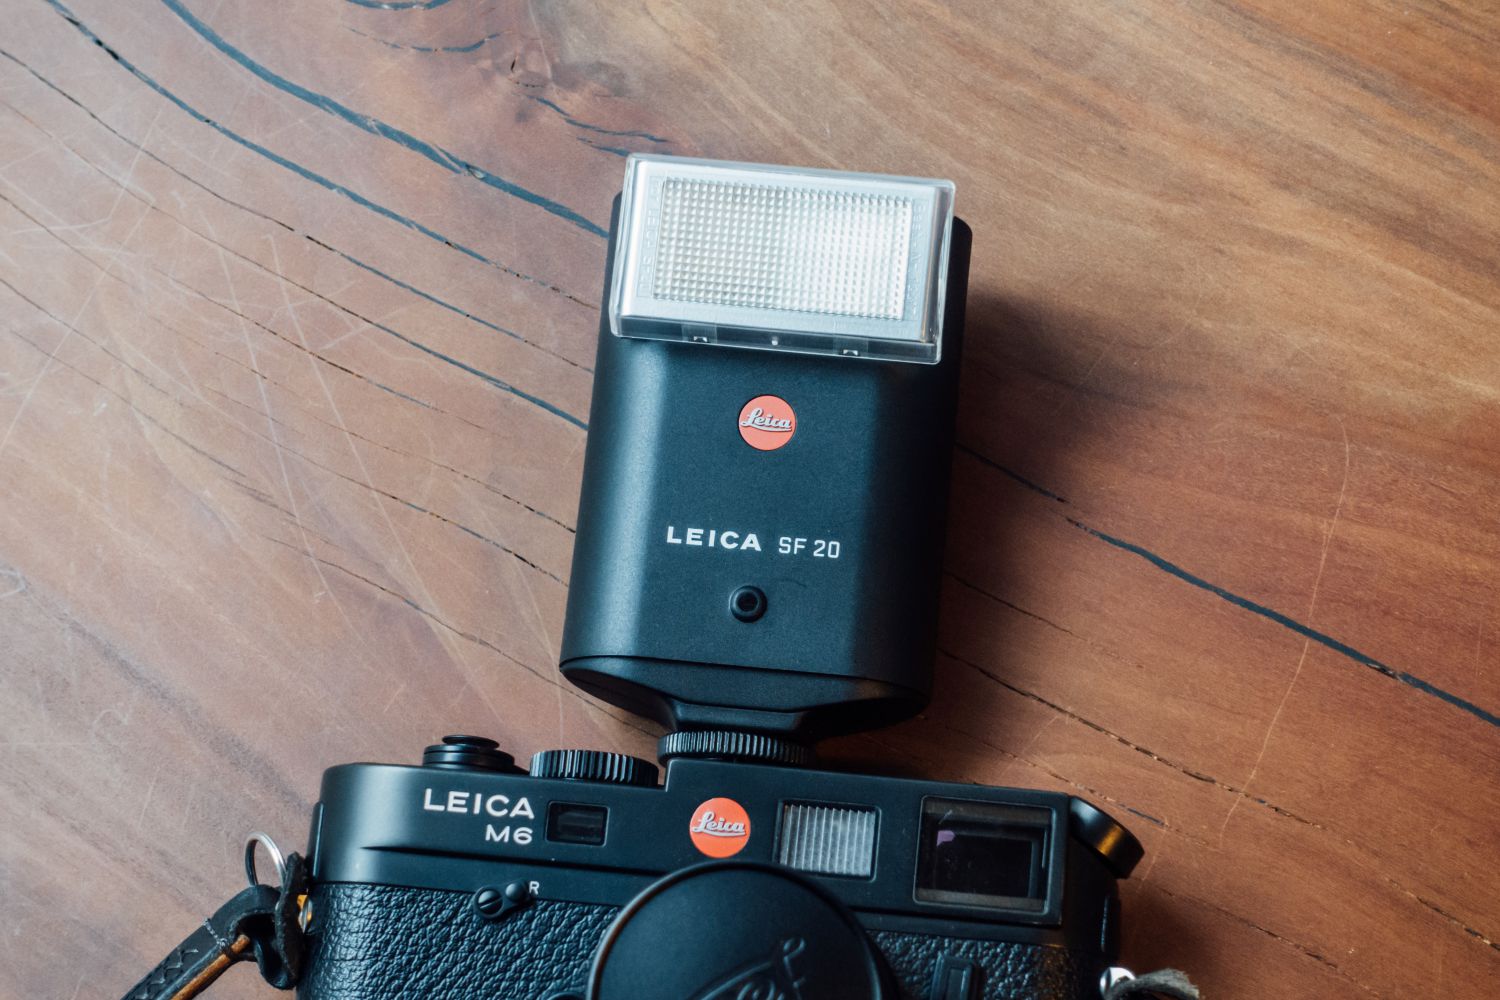 Leica M6 TTLで使える純正フラッシュSF 20を購入。 | DRESS CODE 